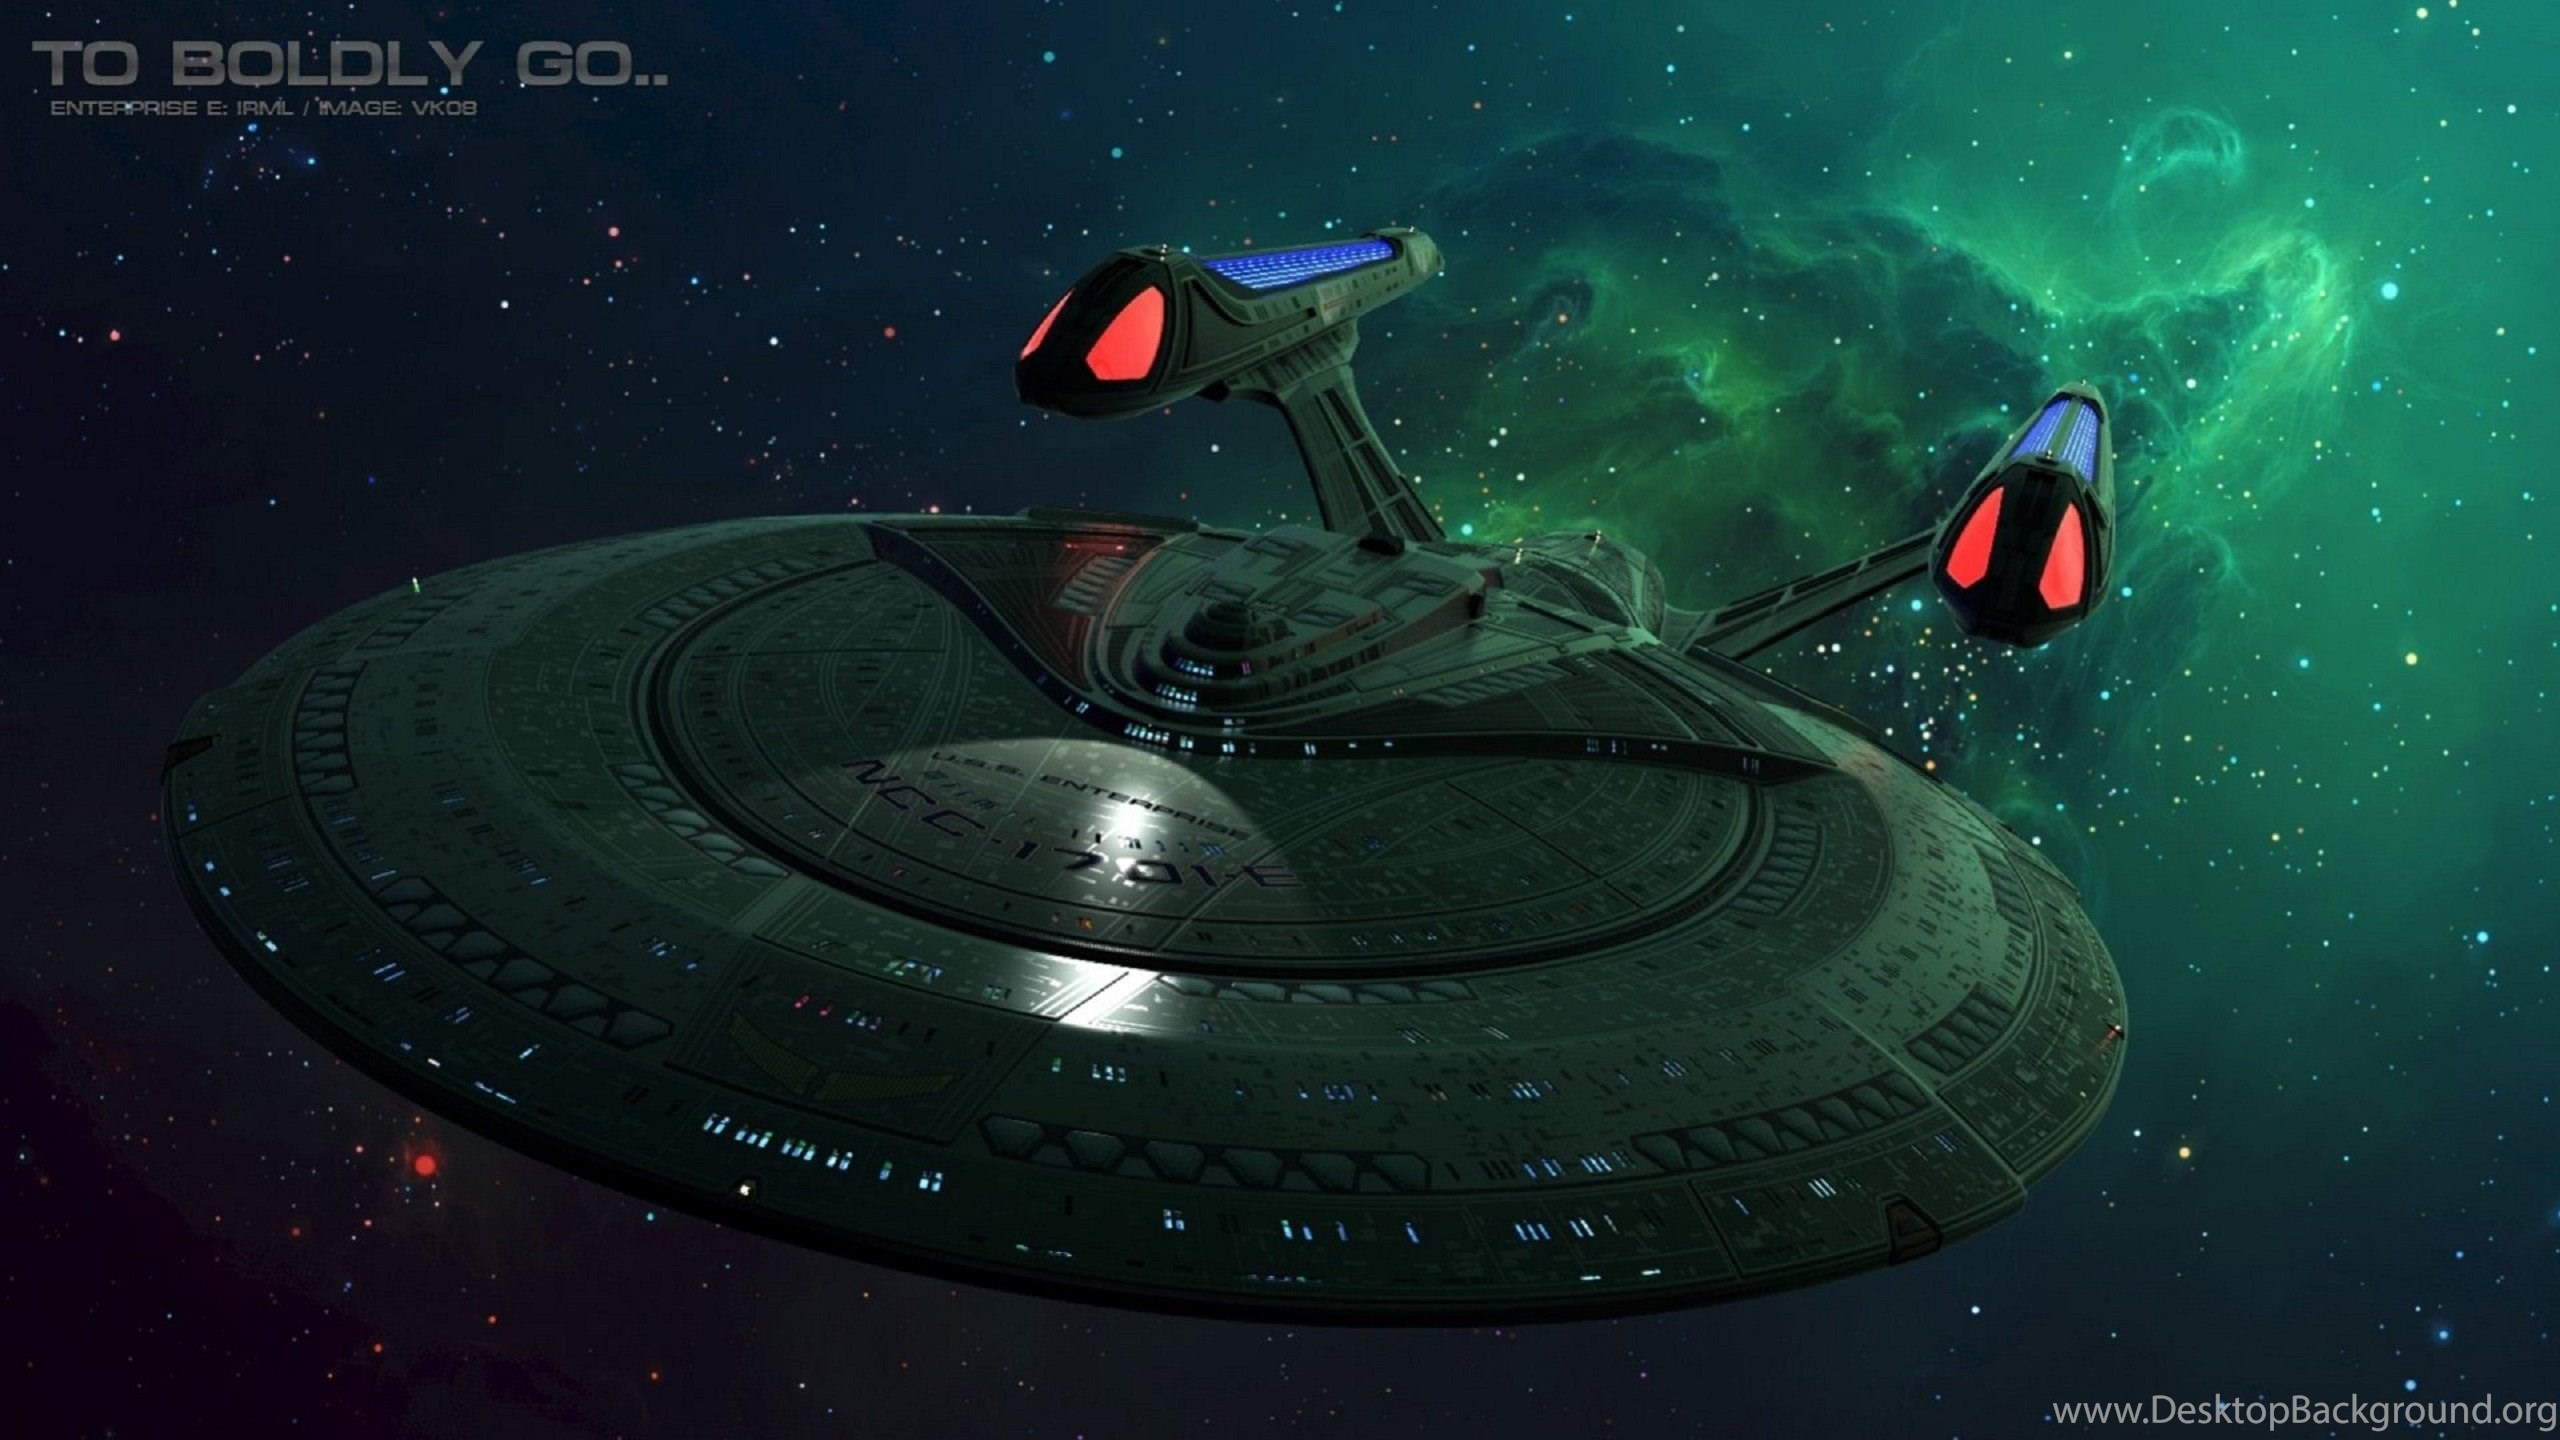 Star Trek Enterprise E Wallpapers Desktop Background